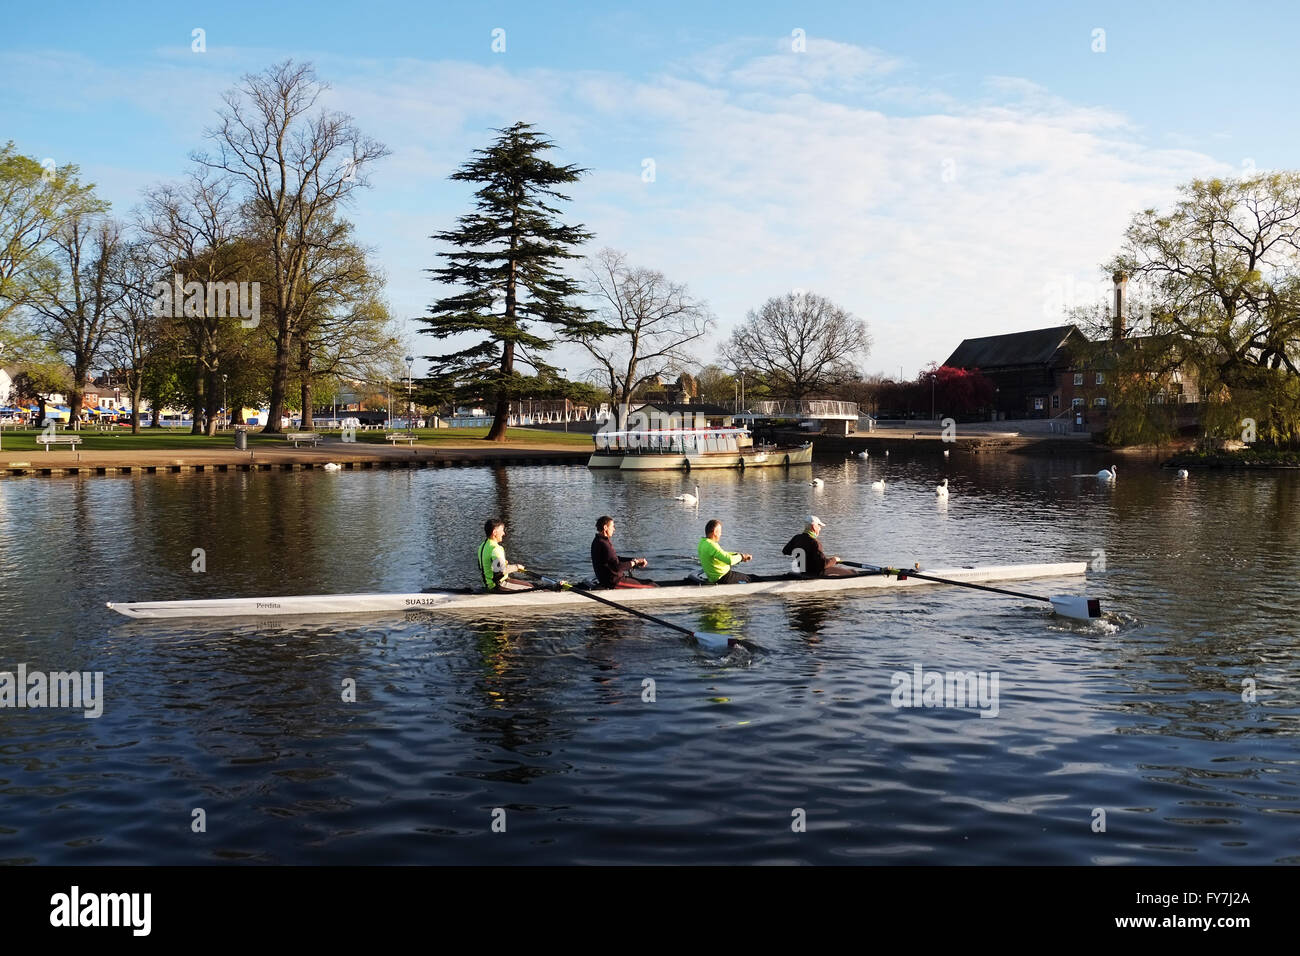 Rameurs de Stratford-sur-Avon Rowing Club, sur la rivière Avon, avec le Bancroft Jardins en arrière-plan. Banque D'Images